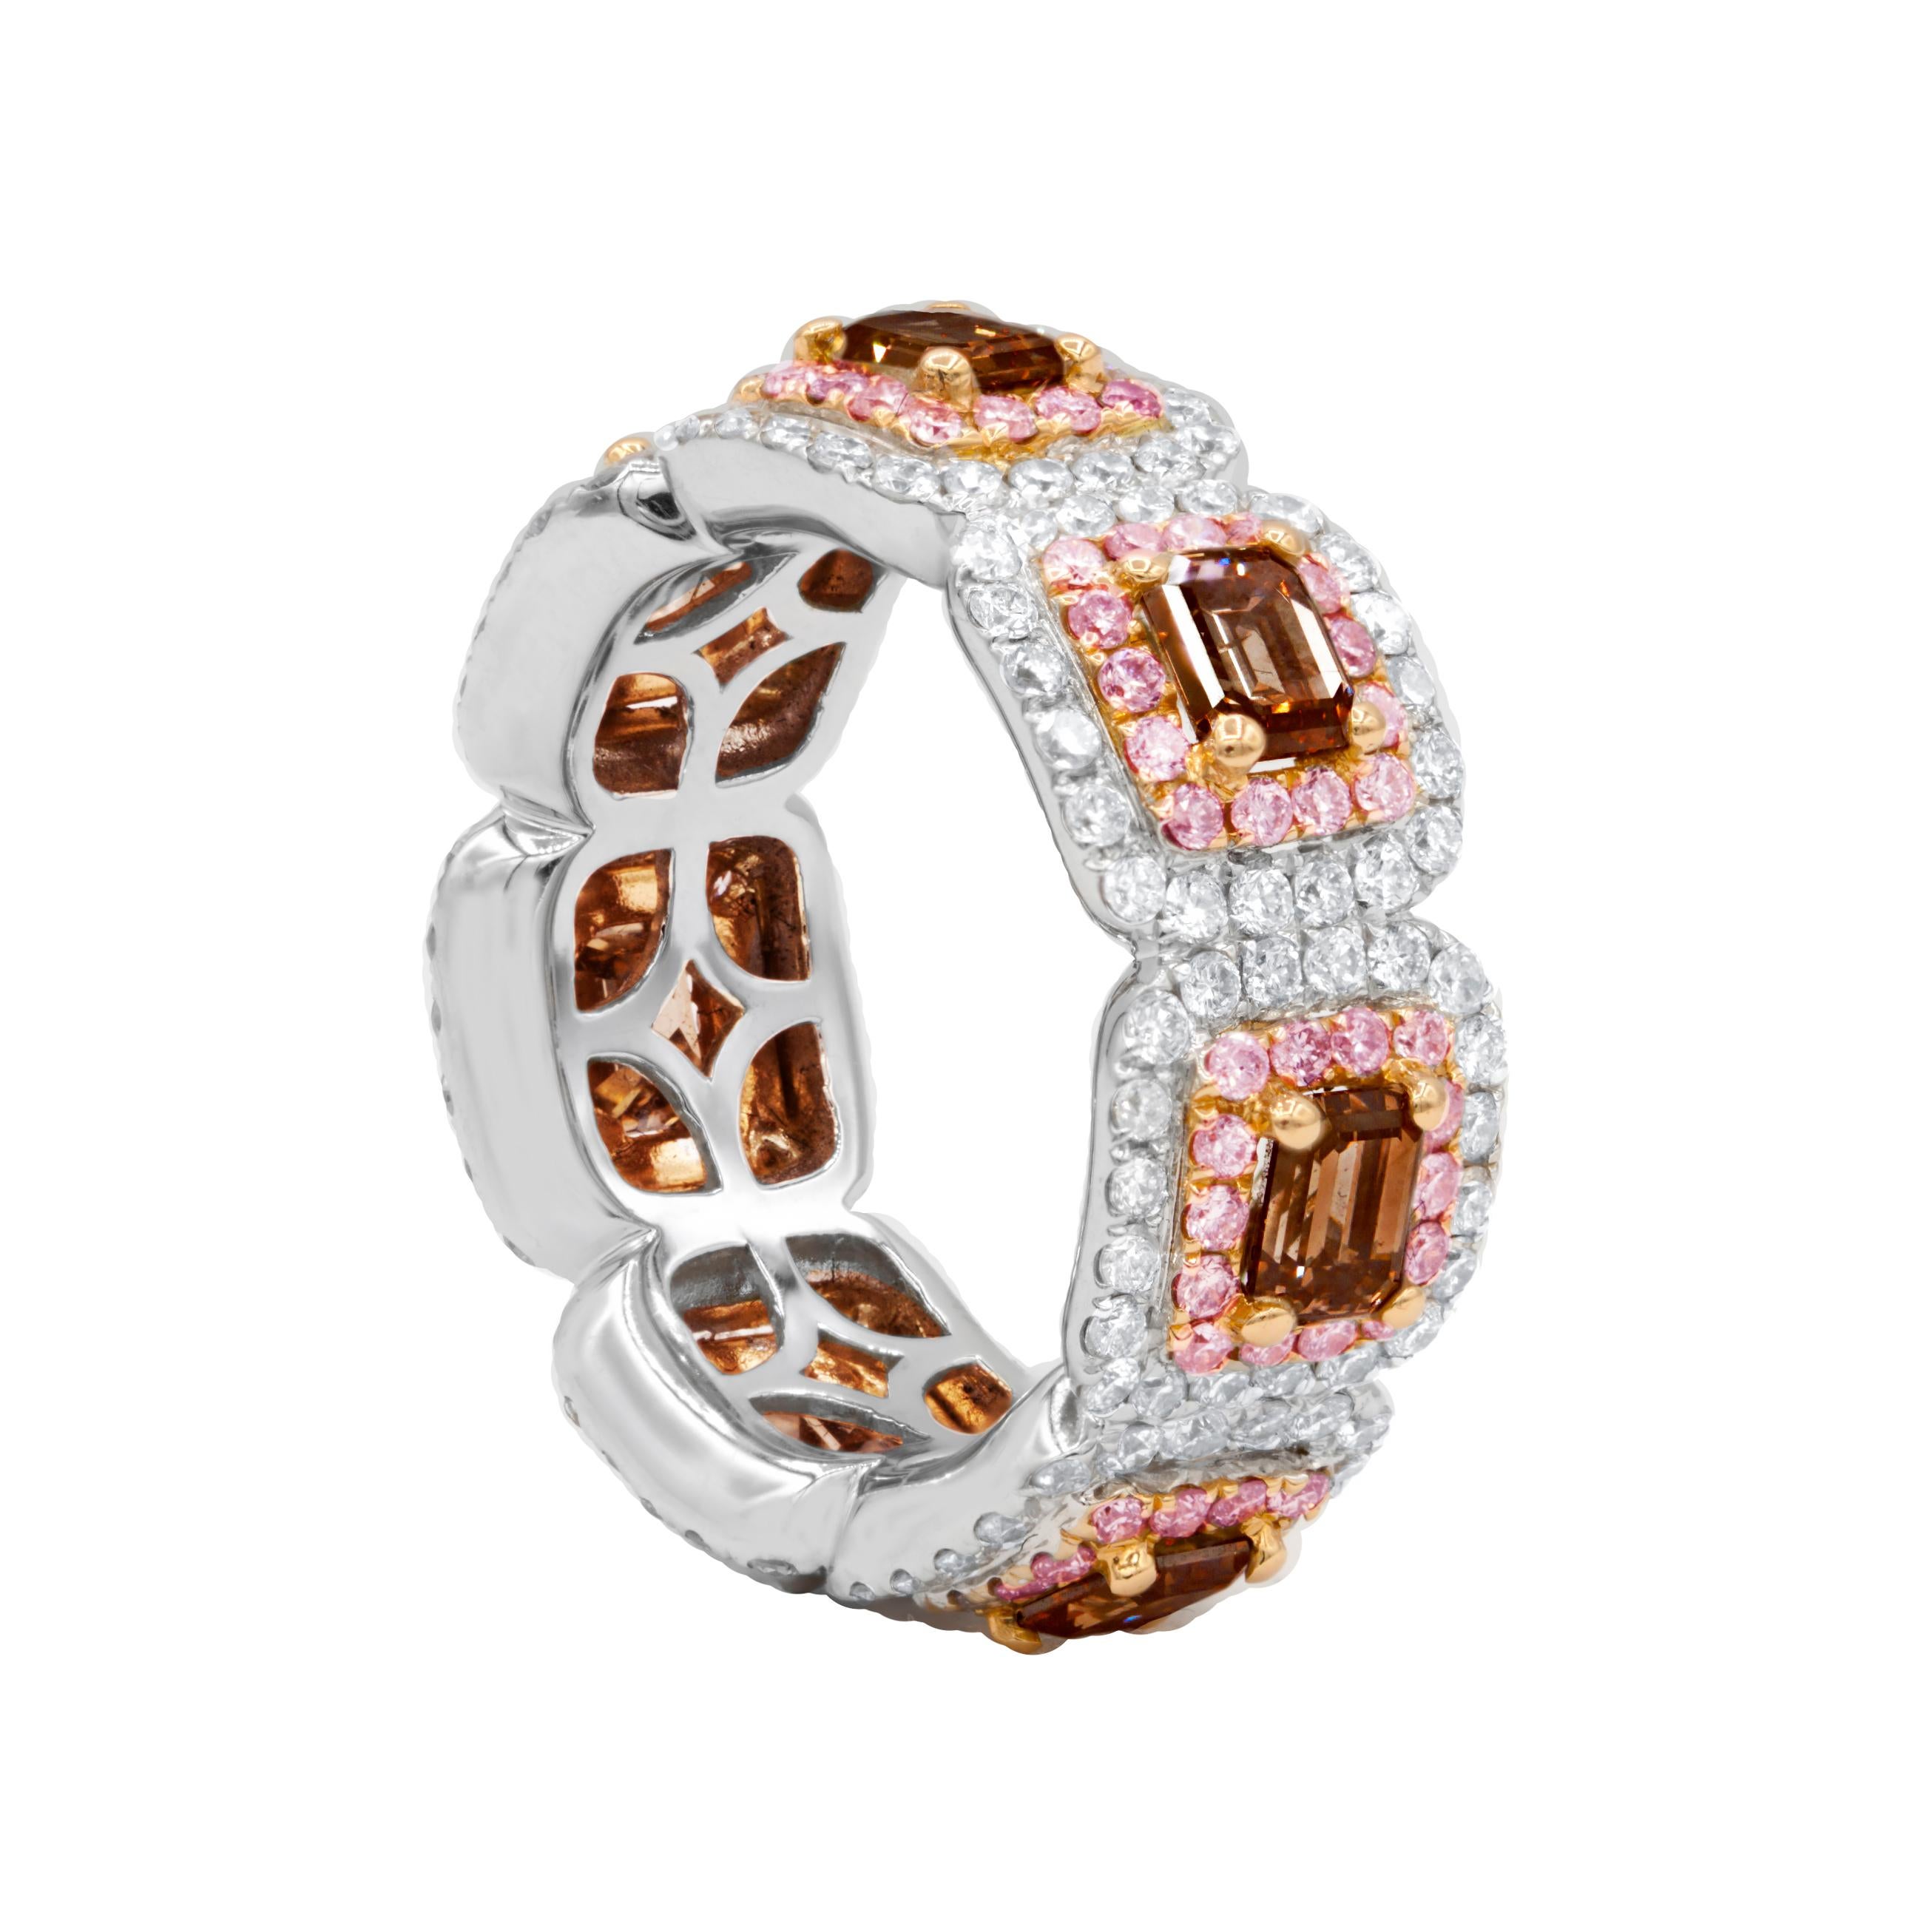 18 kt Weiß- und Roségold-Diamantenband für die Ewigkeit mit 4,39 Karat Diamanten und 3,50 Karat braunen Diamanten  (7 braune Diamanten im Smaragdschliff).
Diana M. ist seit über 35 Jahren ein führender Anbieter von hochwertigem Schmuck.
Diana M ist